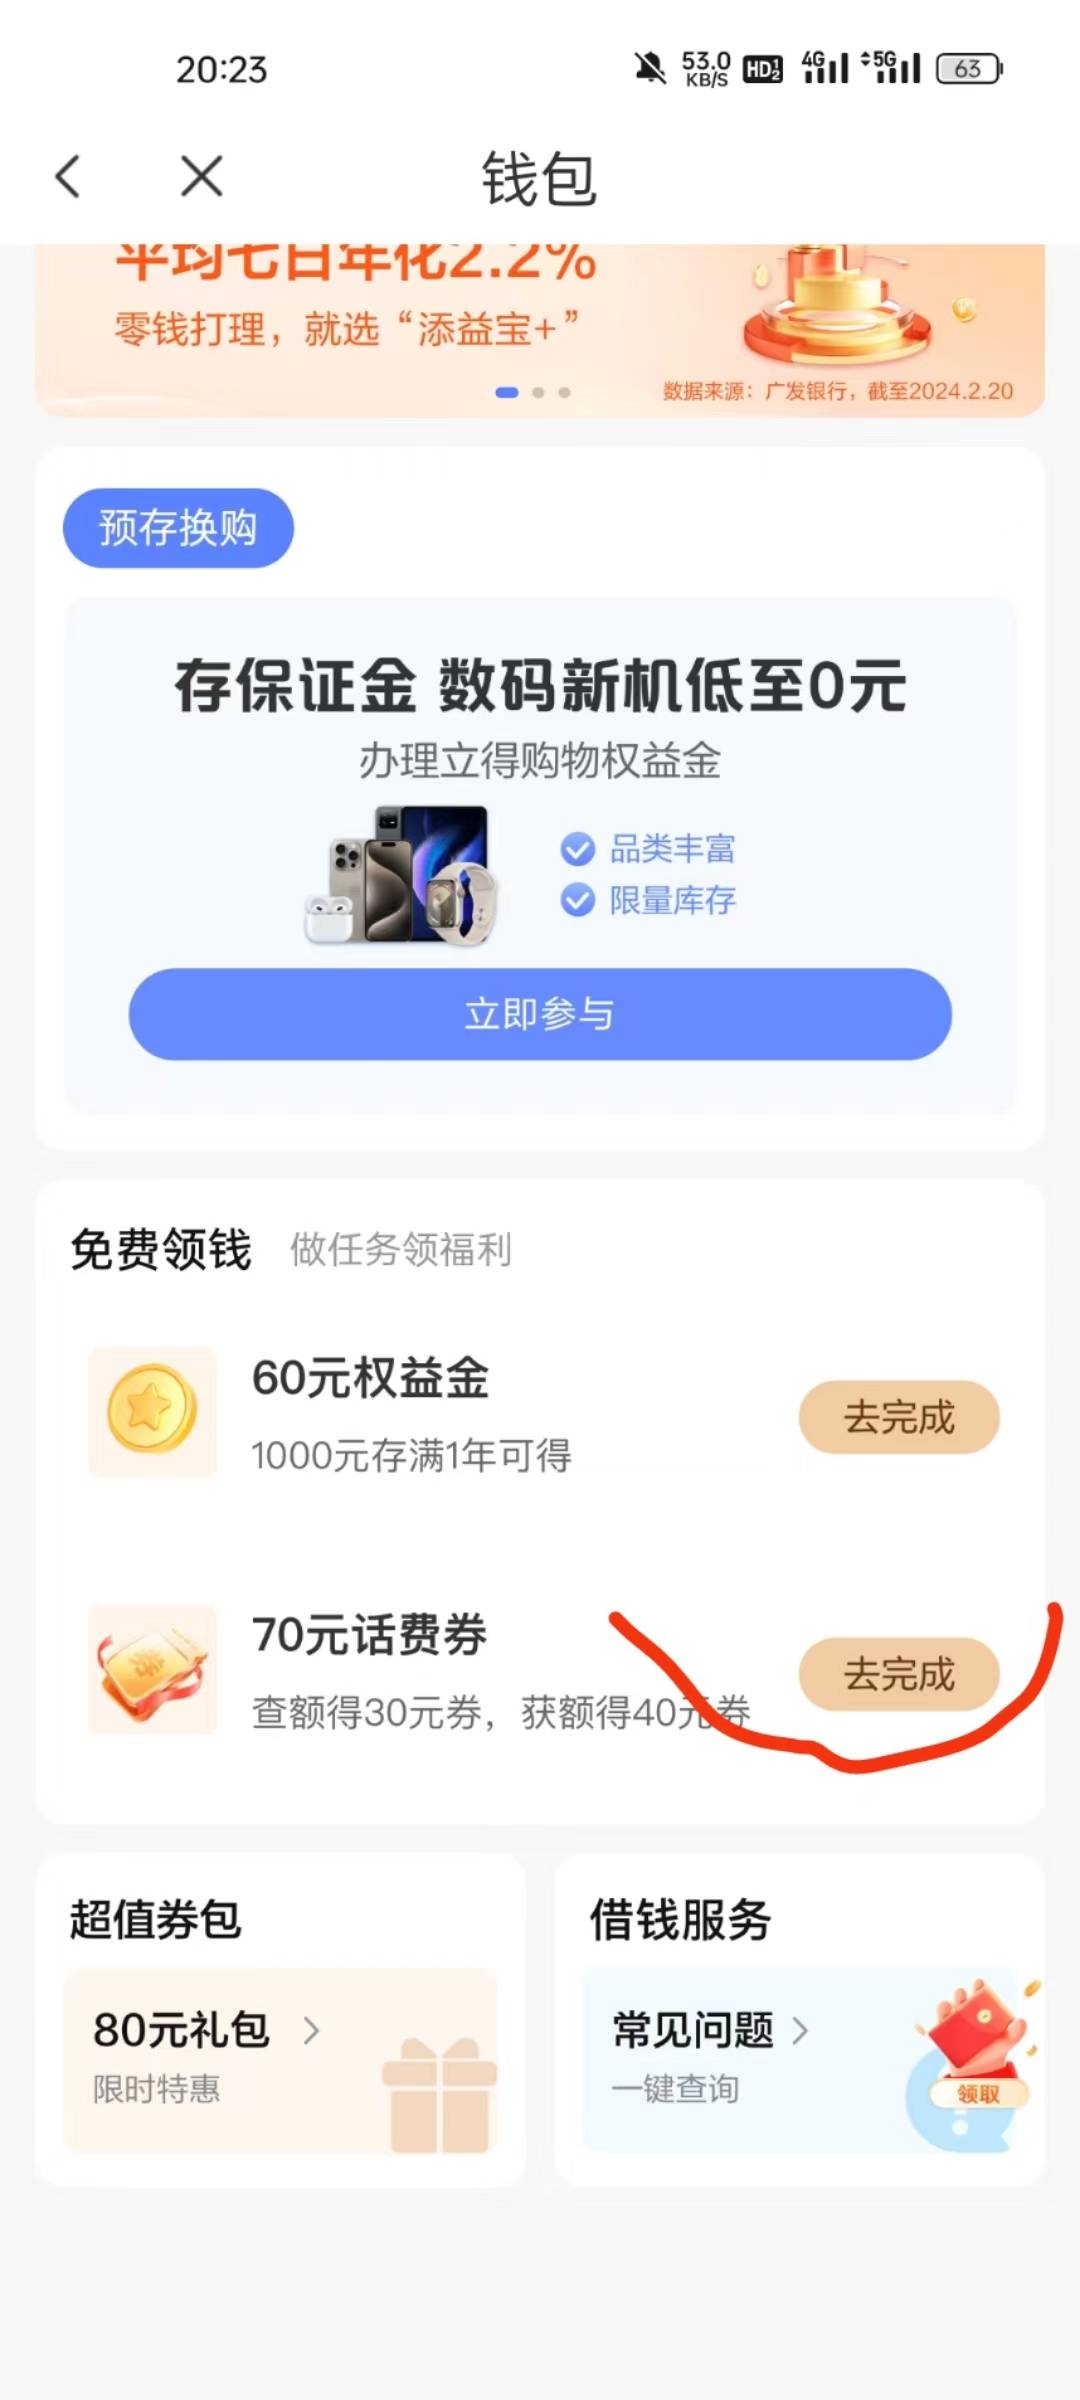 中国电信app欢GO双重话费福利活动
​查额度就有，基本人人有，
移动联通电信号码都可55 / 作者:A仙仙仙 / 